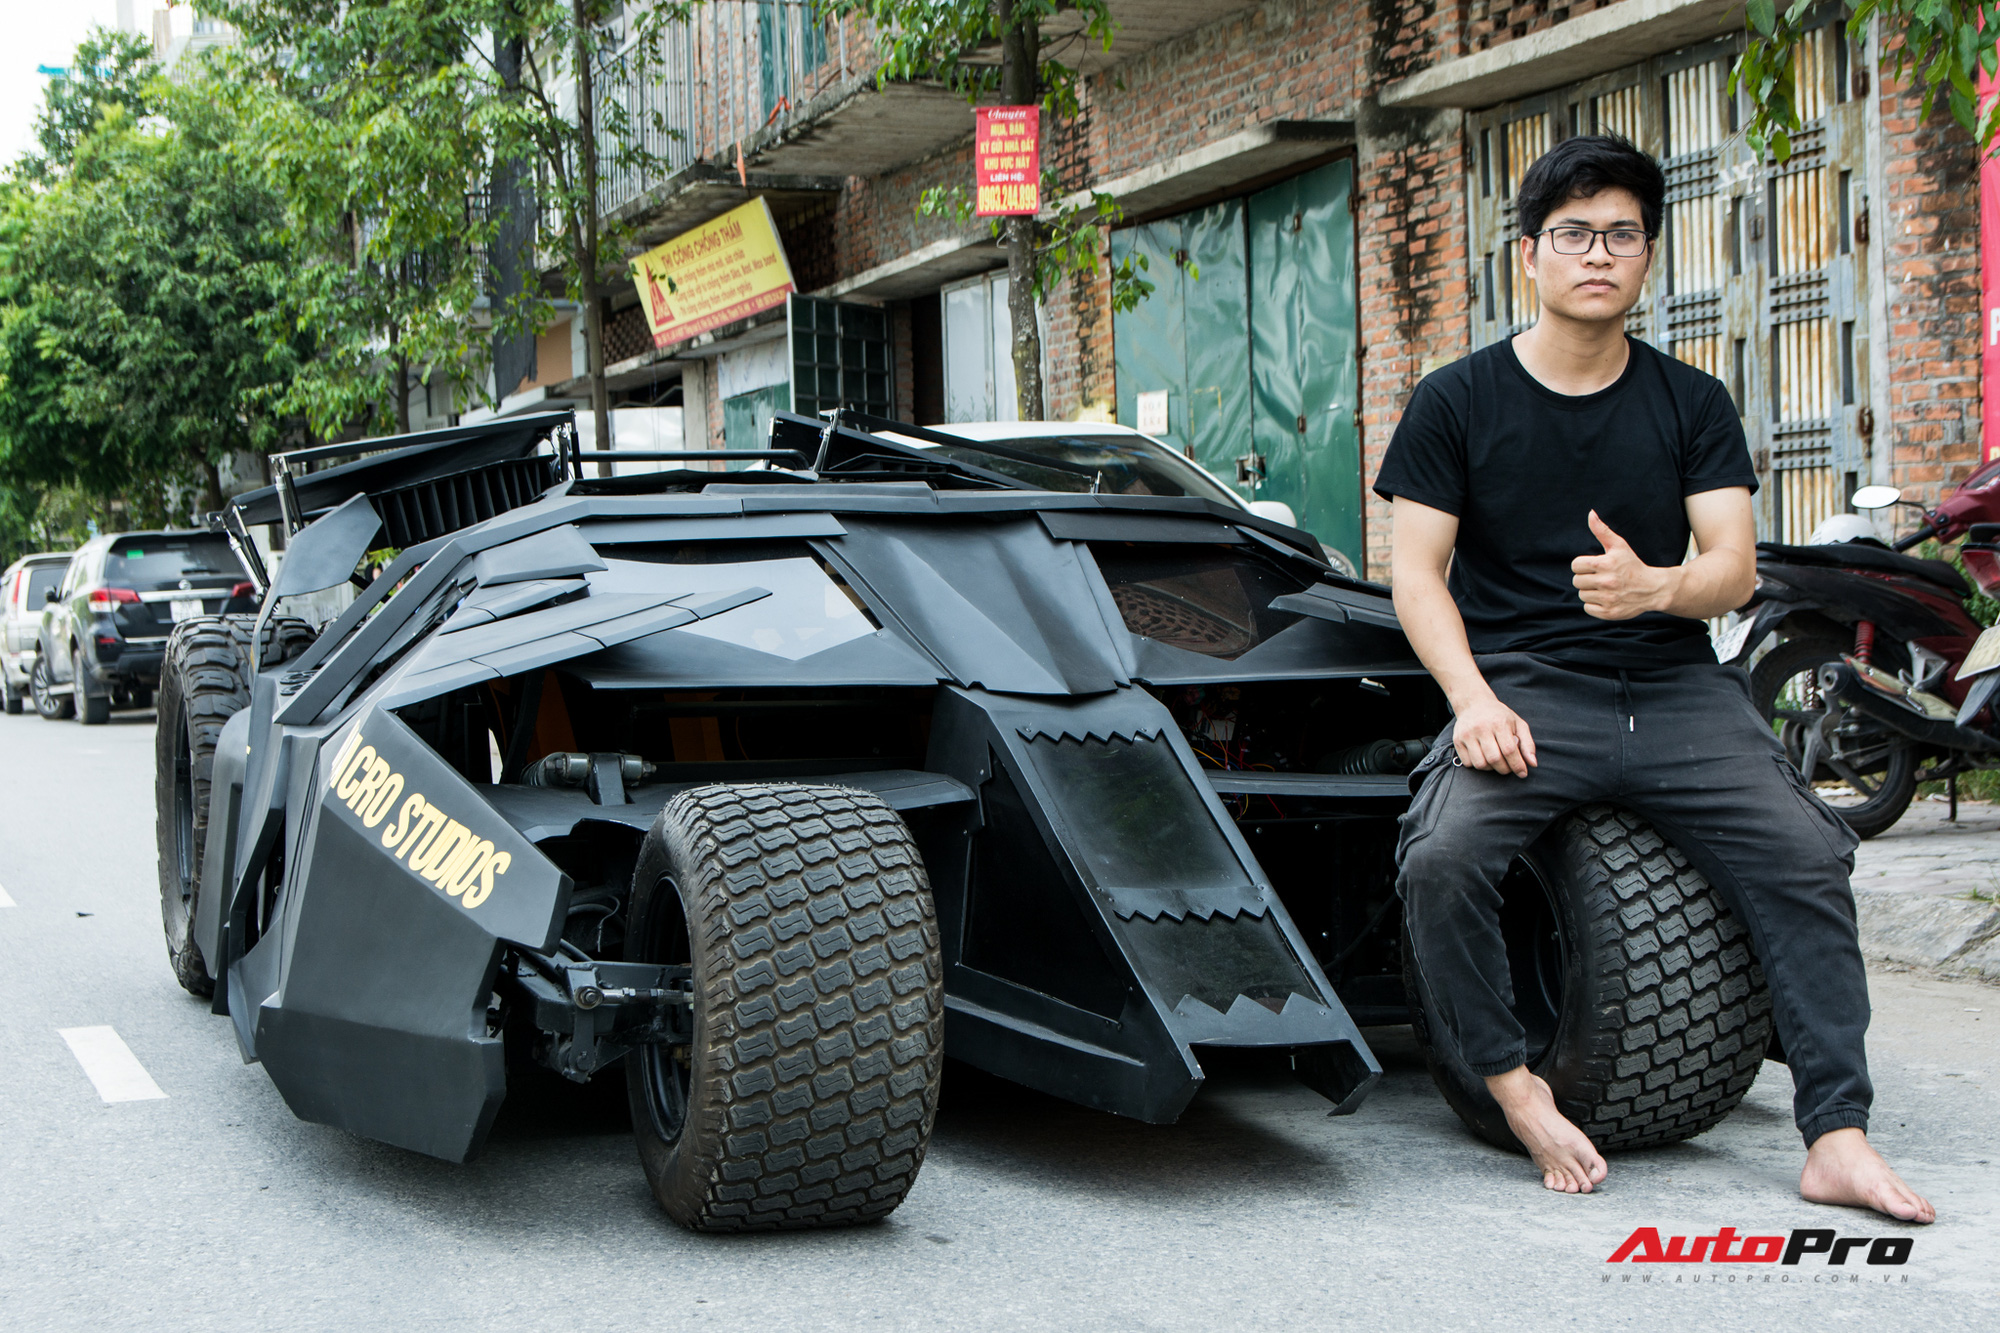 Gặp chàng sinh viên Việt tự làm ‘siêu xe’ Batmobile đang gây sốt: Cặm cụi 10 tháng, tốn nửa tỷ đồng nhưng vẫn chưa có điểm dừng - Ảnh 2.